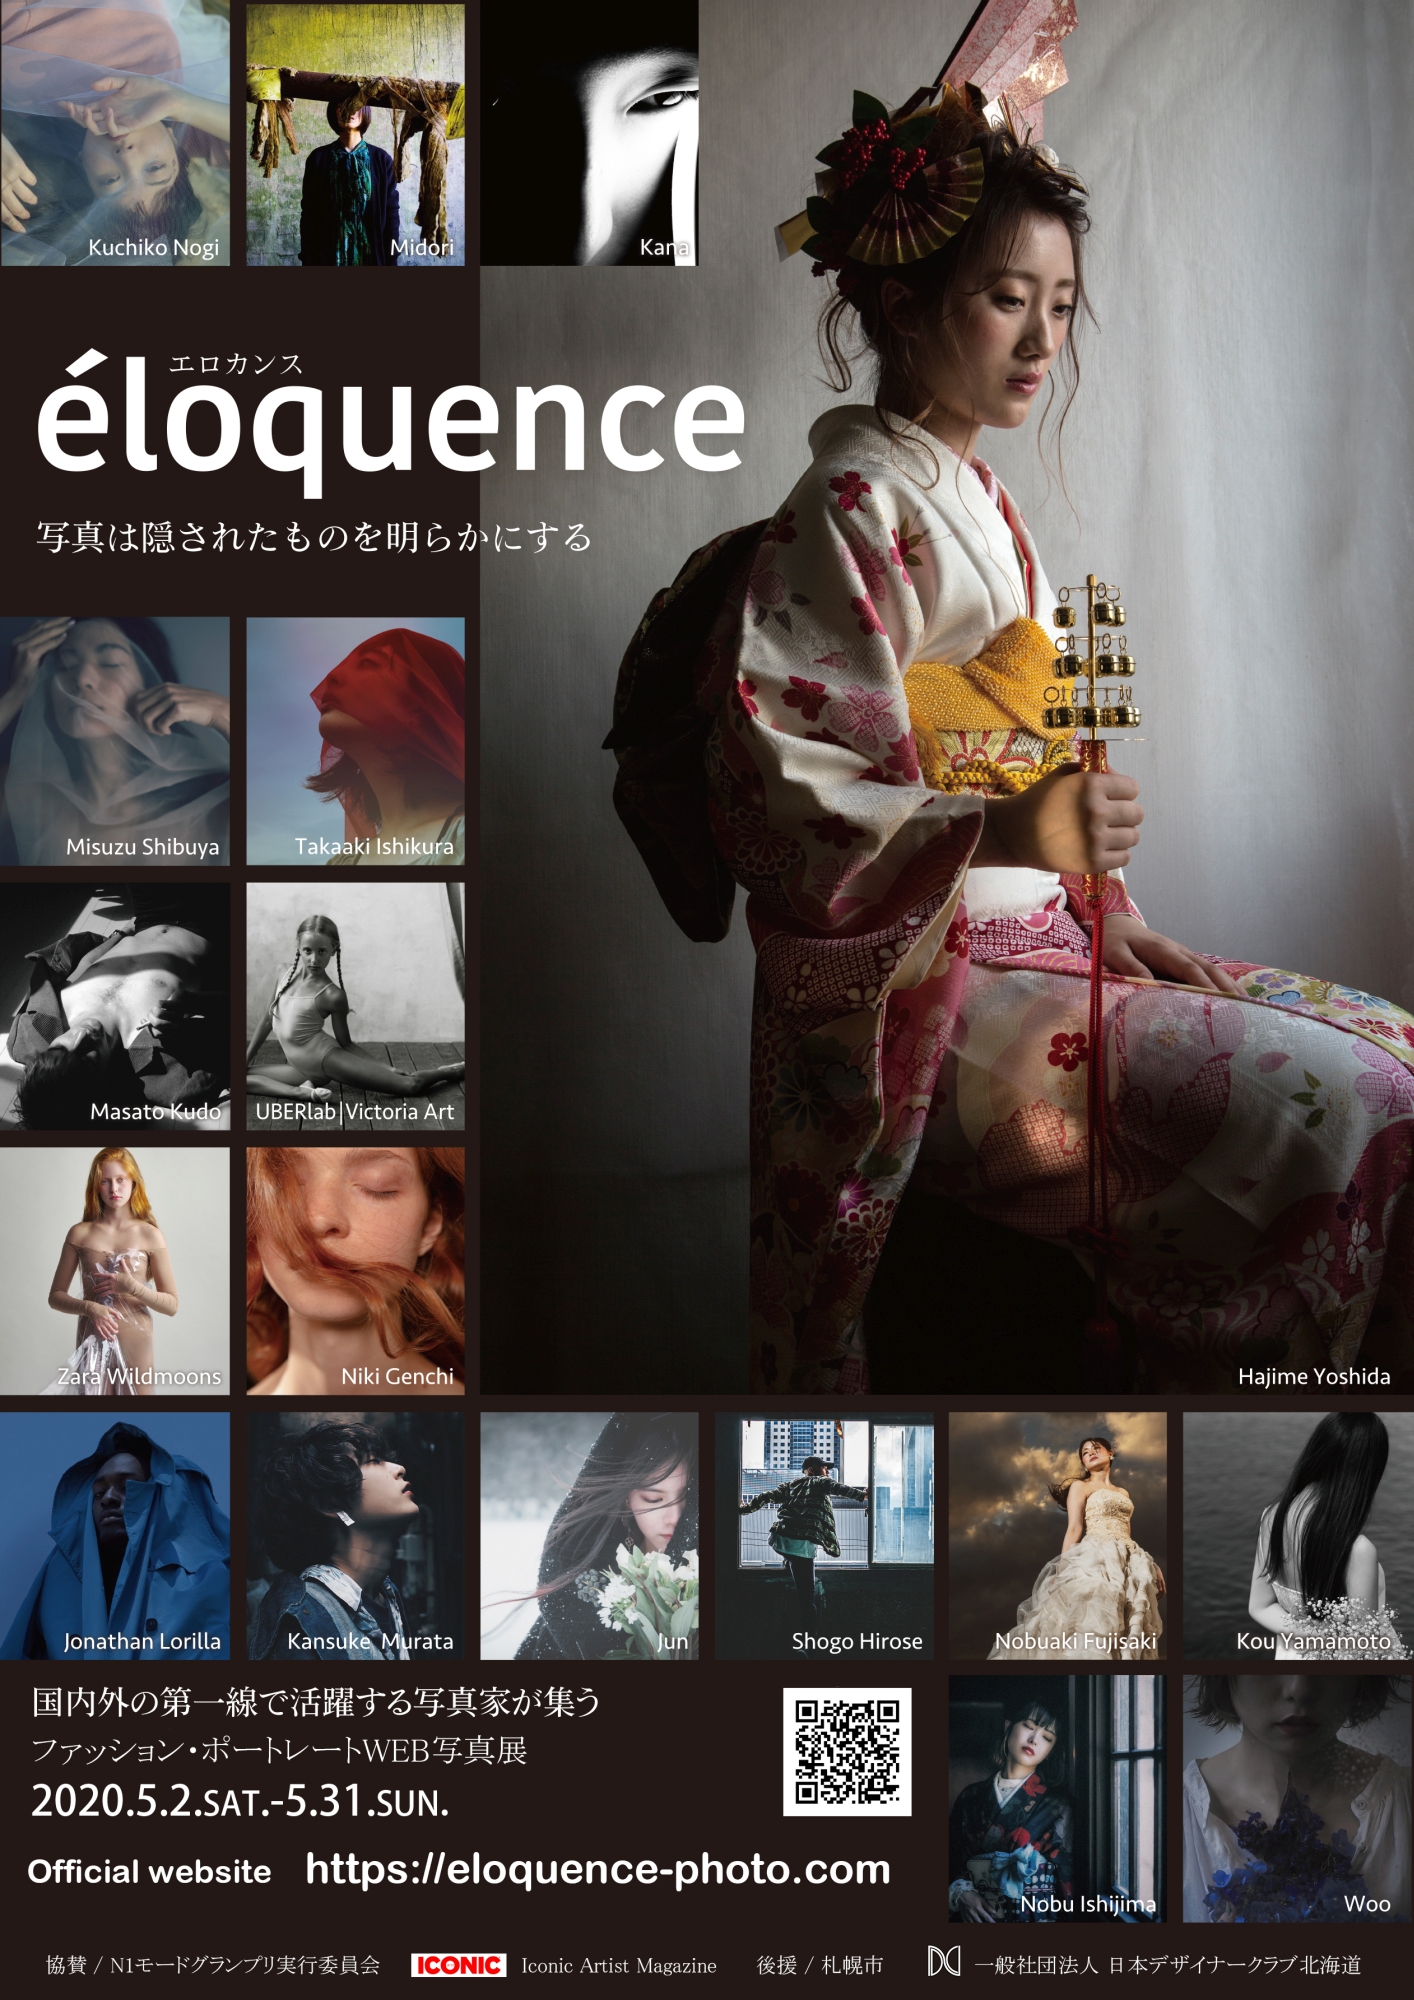 【中止】éloquence -エロカンス- 写真表現イメージ